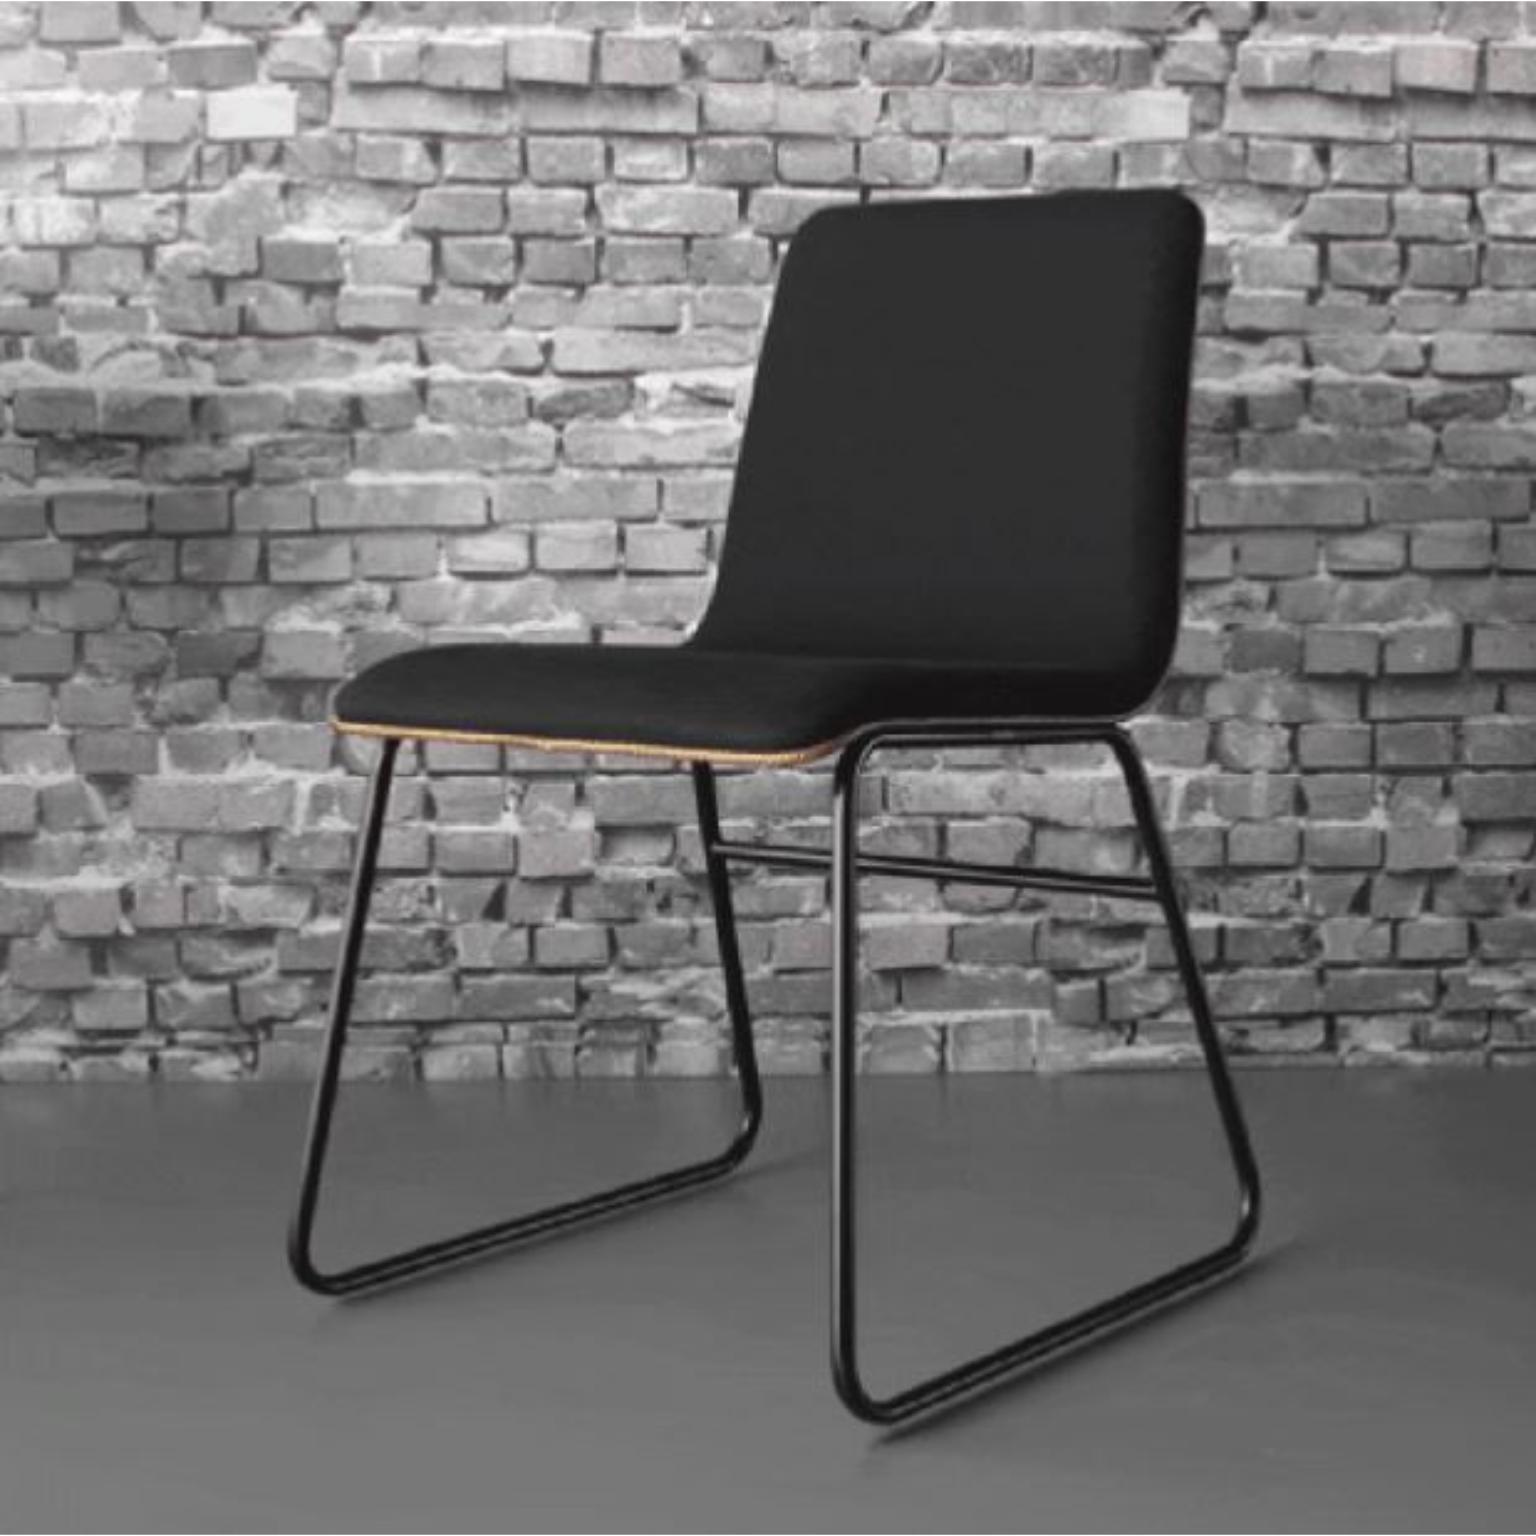 Presto Stuhl von Doimo Brasil
Abmessungen: B 50 x T 53 x H 81 cm 
MATERIALIEN: Metall, Sitz gepolstert. 


Mit der Absicht, guten Geschmack und Persönlichkeit zu vermitteln, entschlüsselt Doimo Trends und folgt der Entwicklung des Menschen und